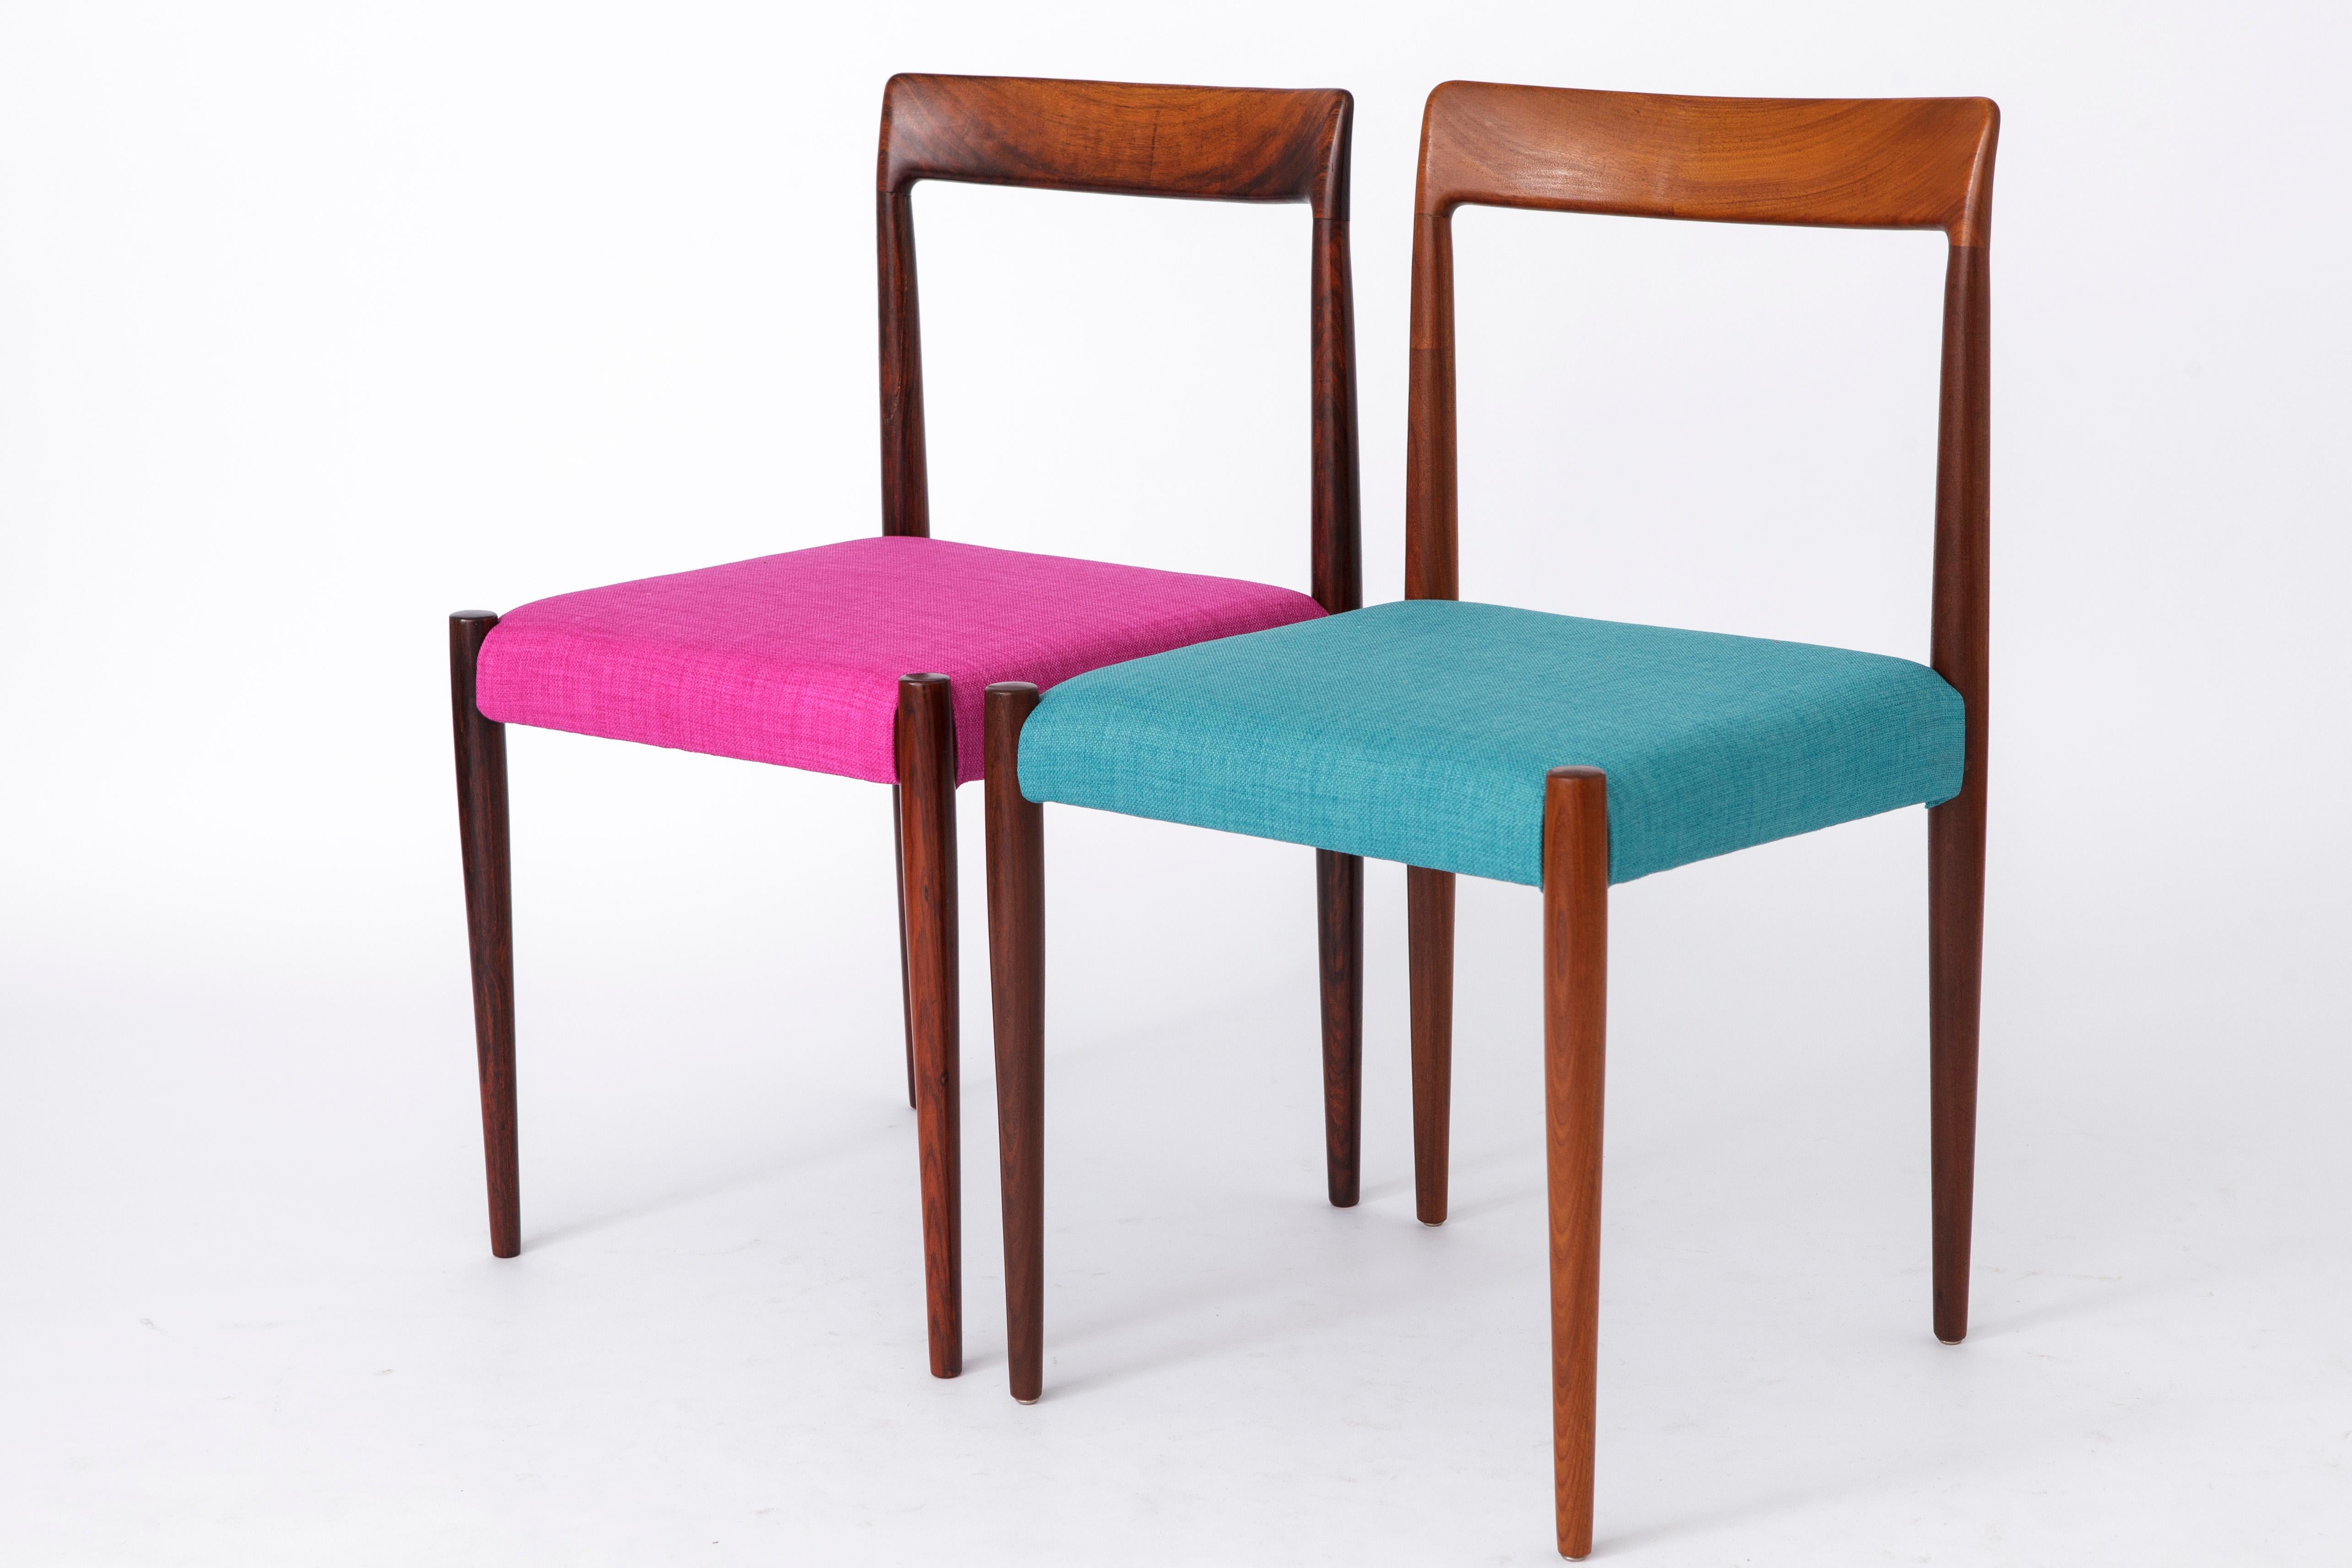 2 Vintage Esszimmerstühle des Herstellers Lübke, Deutschland. 
Produktionszeitraum: 1960er-1970er Jahre
Der angezeigte Preis gilt für einen Satz von 2 Stühlen. 

Stabile Stuhlrahmen, aufgearbeitet und geölt. 
Der linke Stuhl ist aus Palisanderholz,